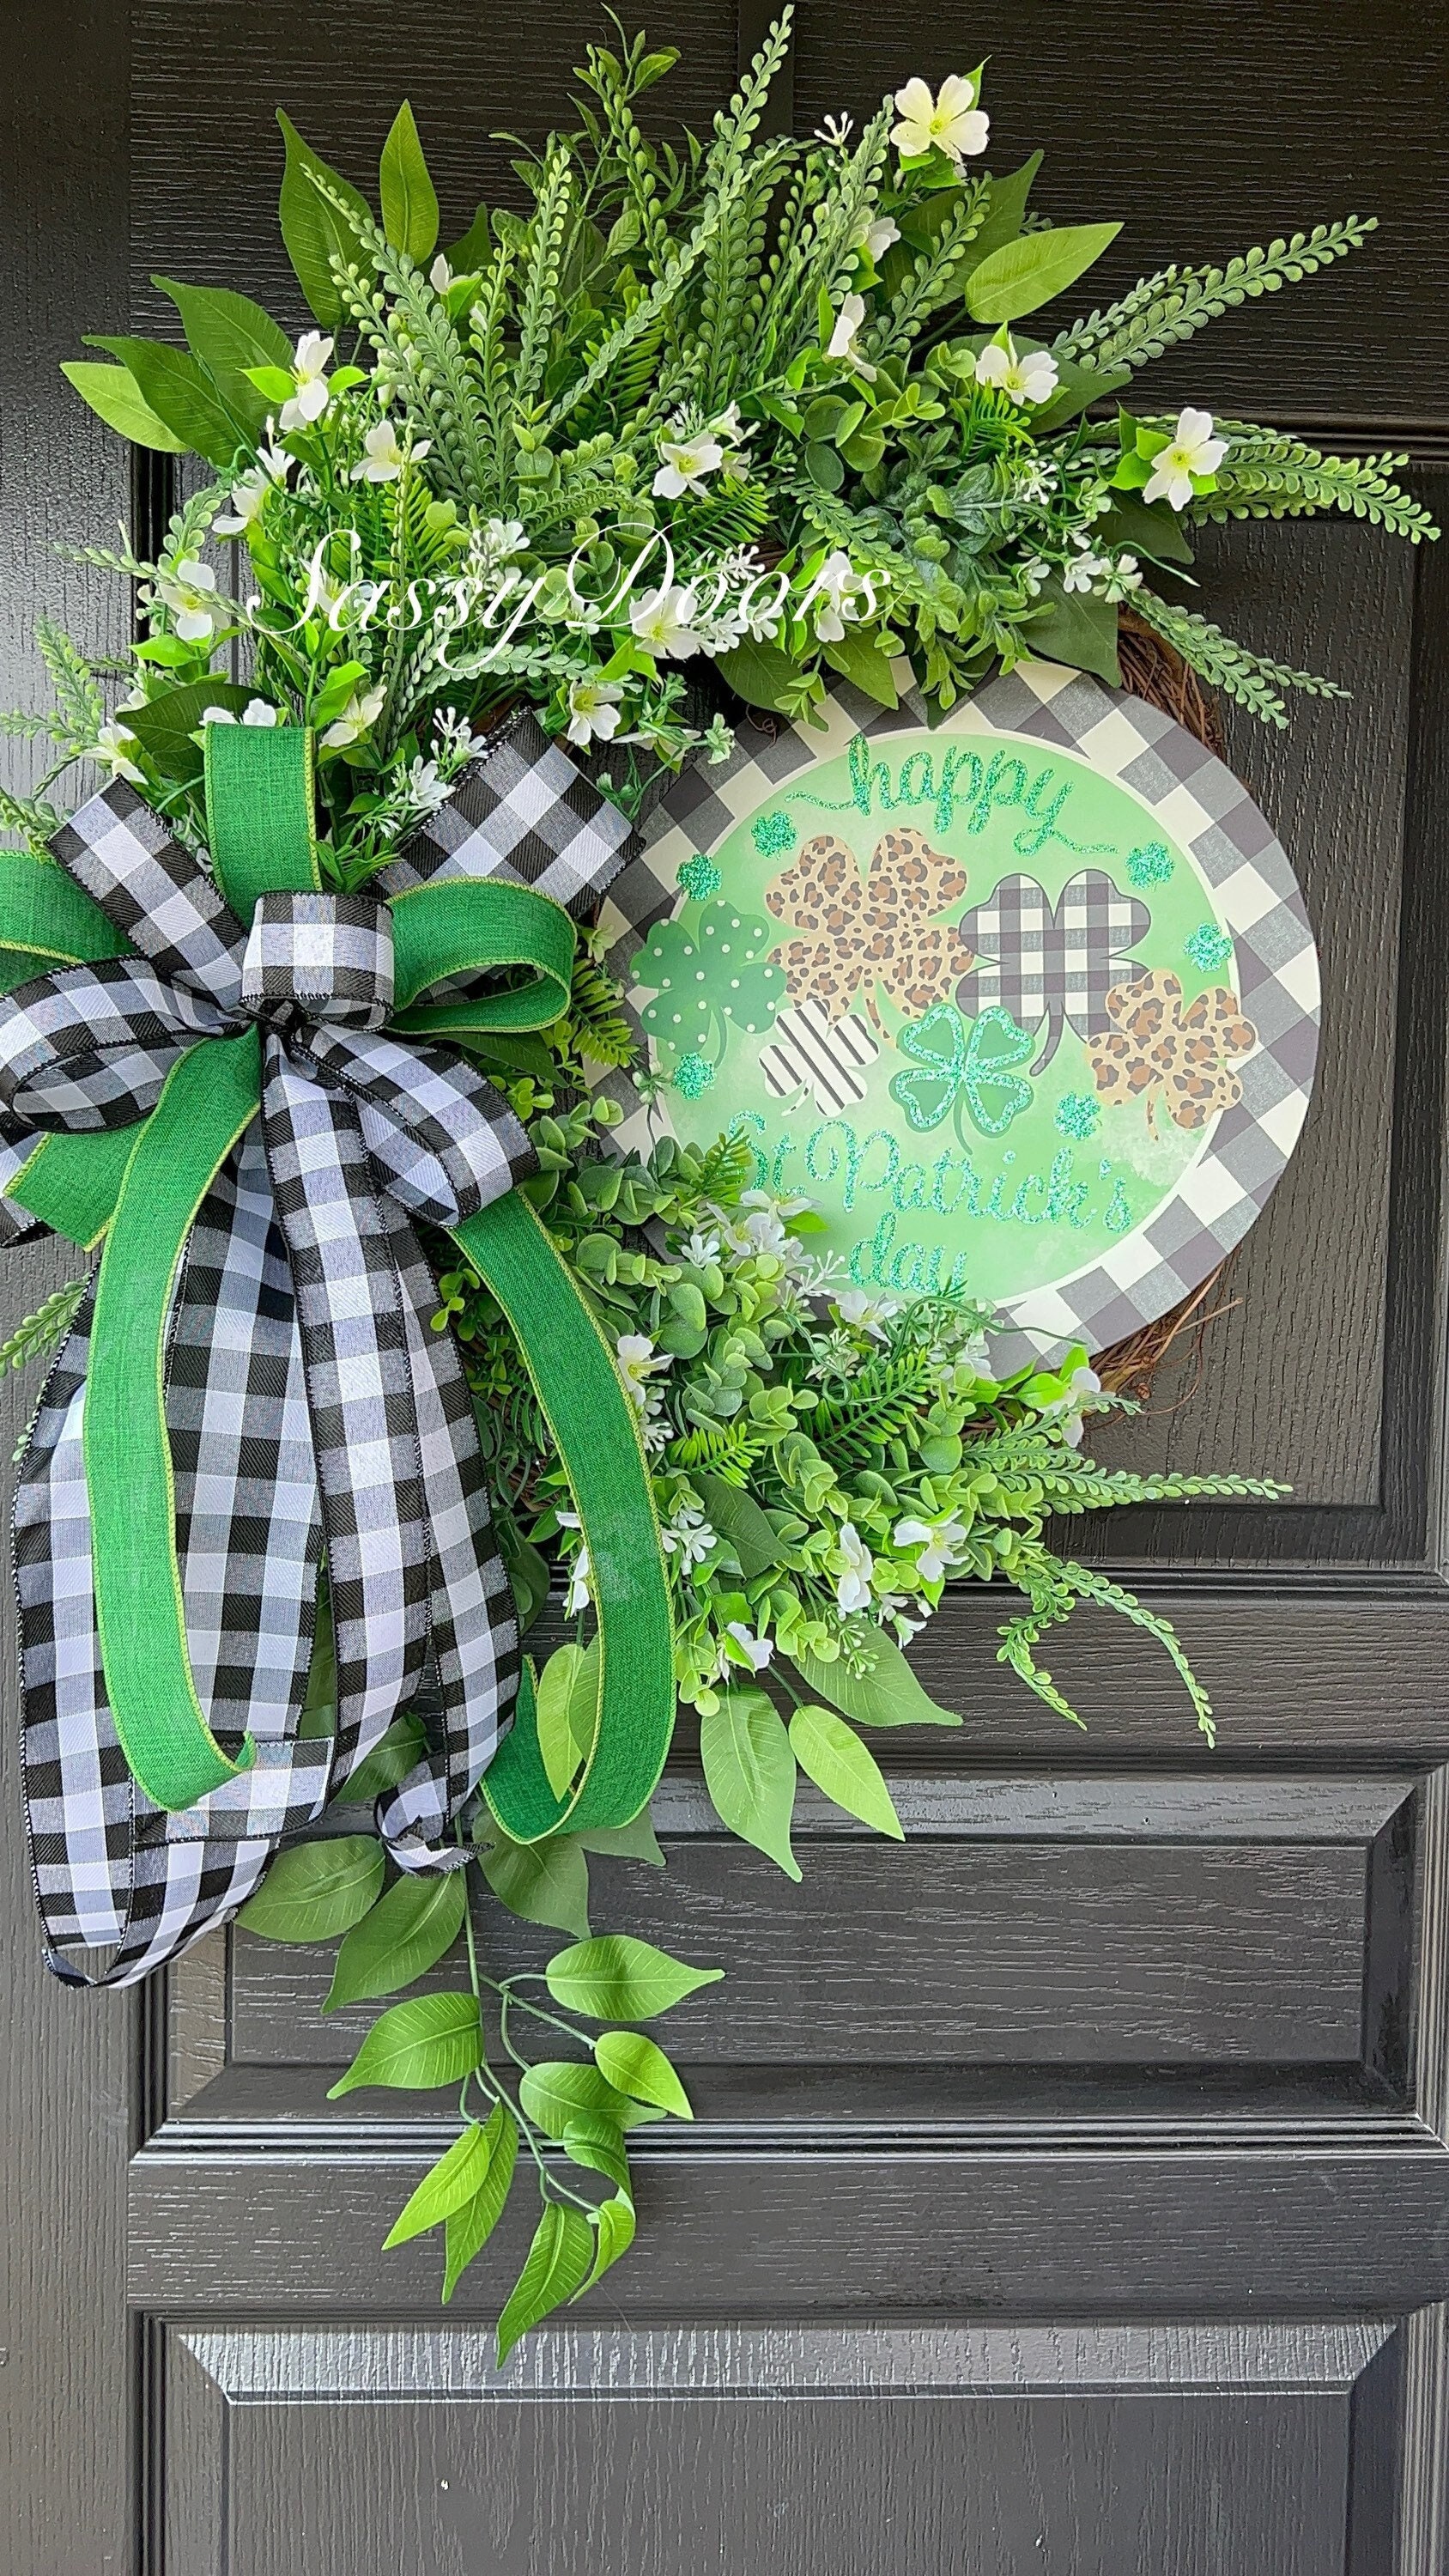 Everyday Wreath-Grapevine Wreath-Everyday Wreath For Front Door,  Transitional Door Wreath